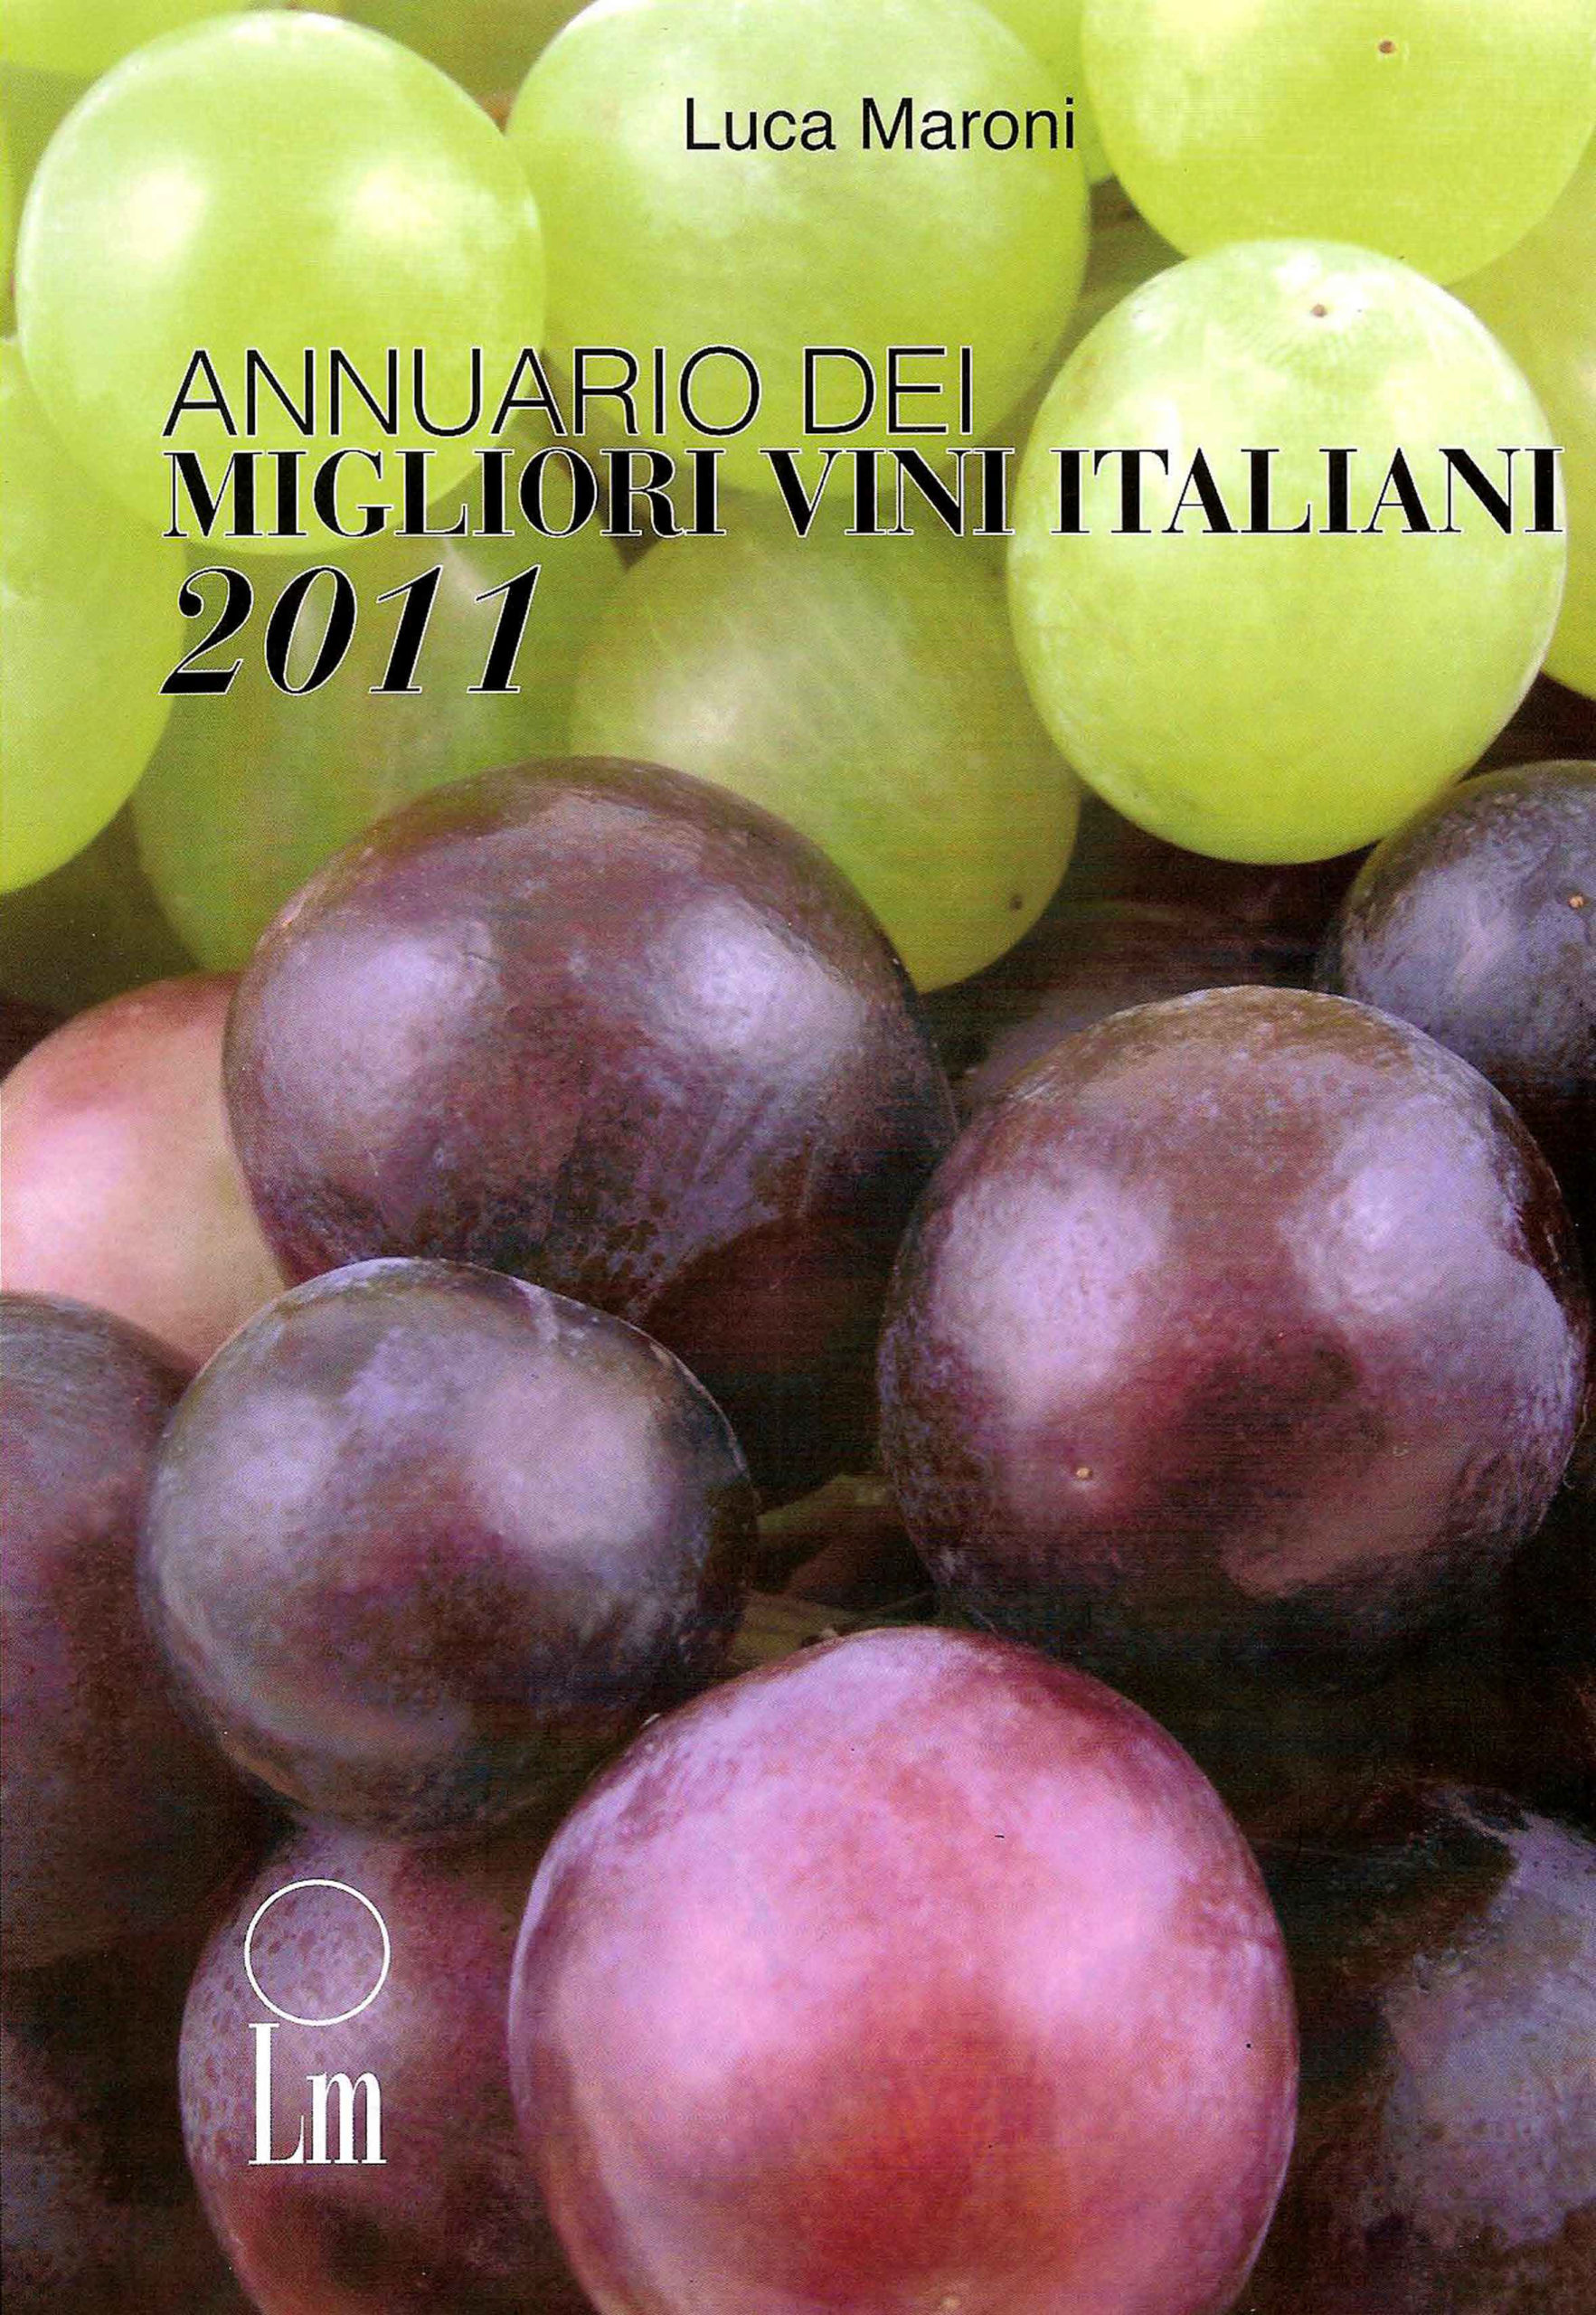 Migliori vini Italiani 2011 - Guida Luca Maroni - Recensione per Cacciagrande